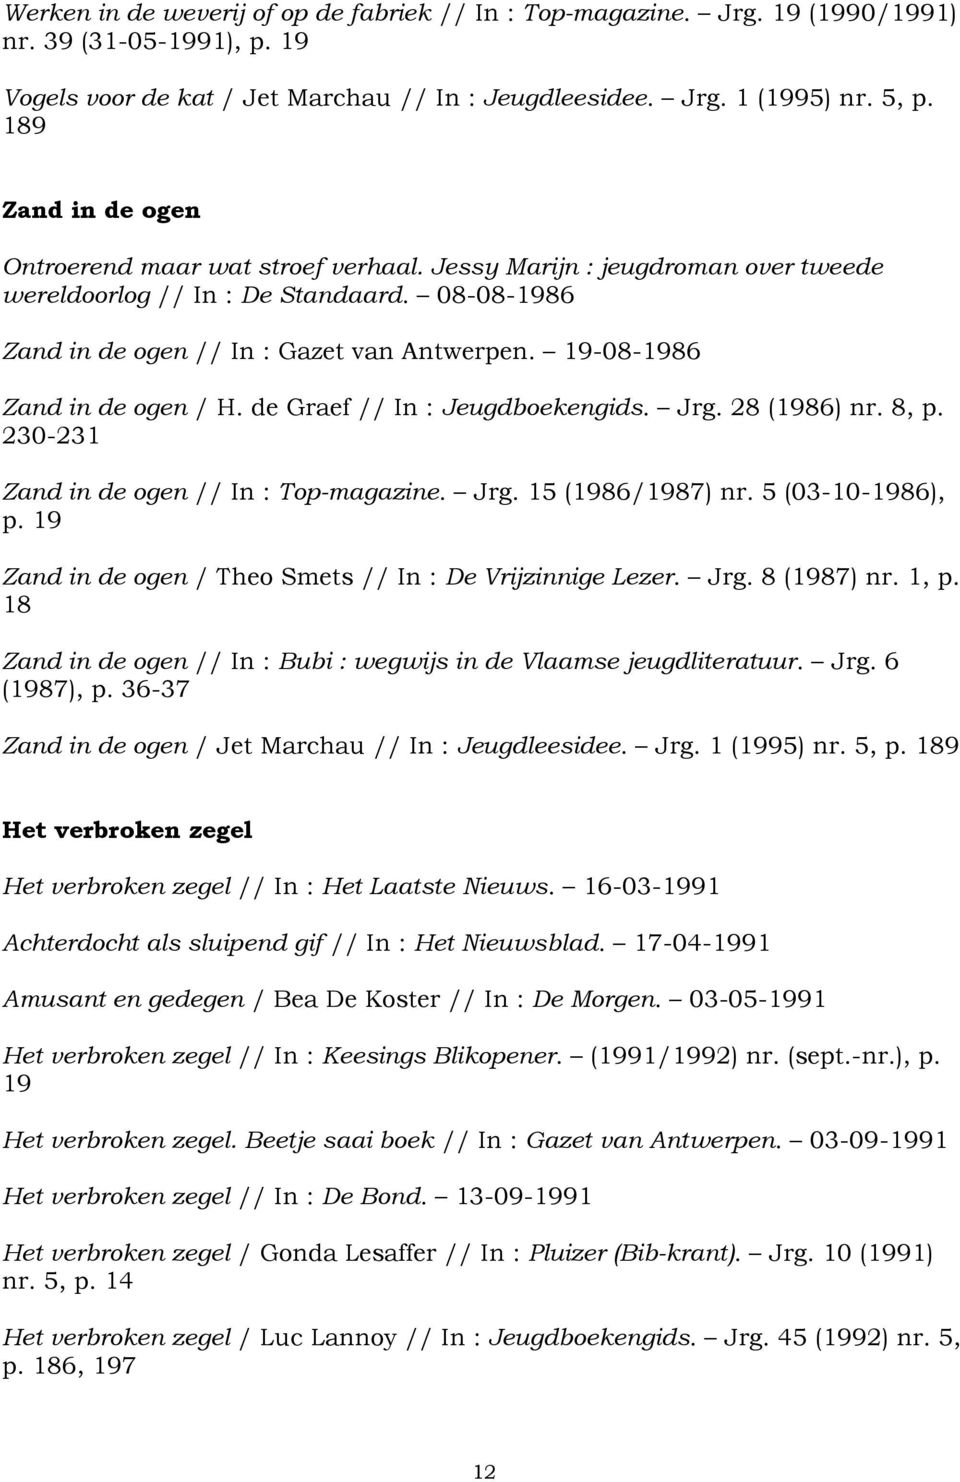 19-08-1986 Zand in de ogen / H. de Graef // In : Jeugdboekengids. Jrg. 28 (1986) nr. 8, p. 230-231 Zand in de ogen // In : Top-magazine. Jrg. 15 (1986/1987) nr. 5 (03-10-1986), p.